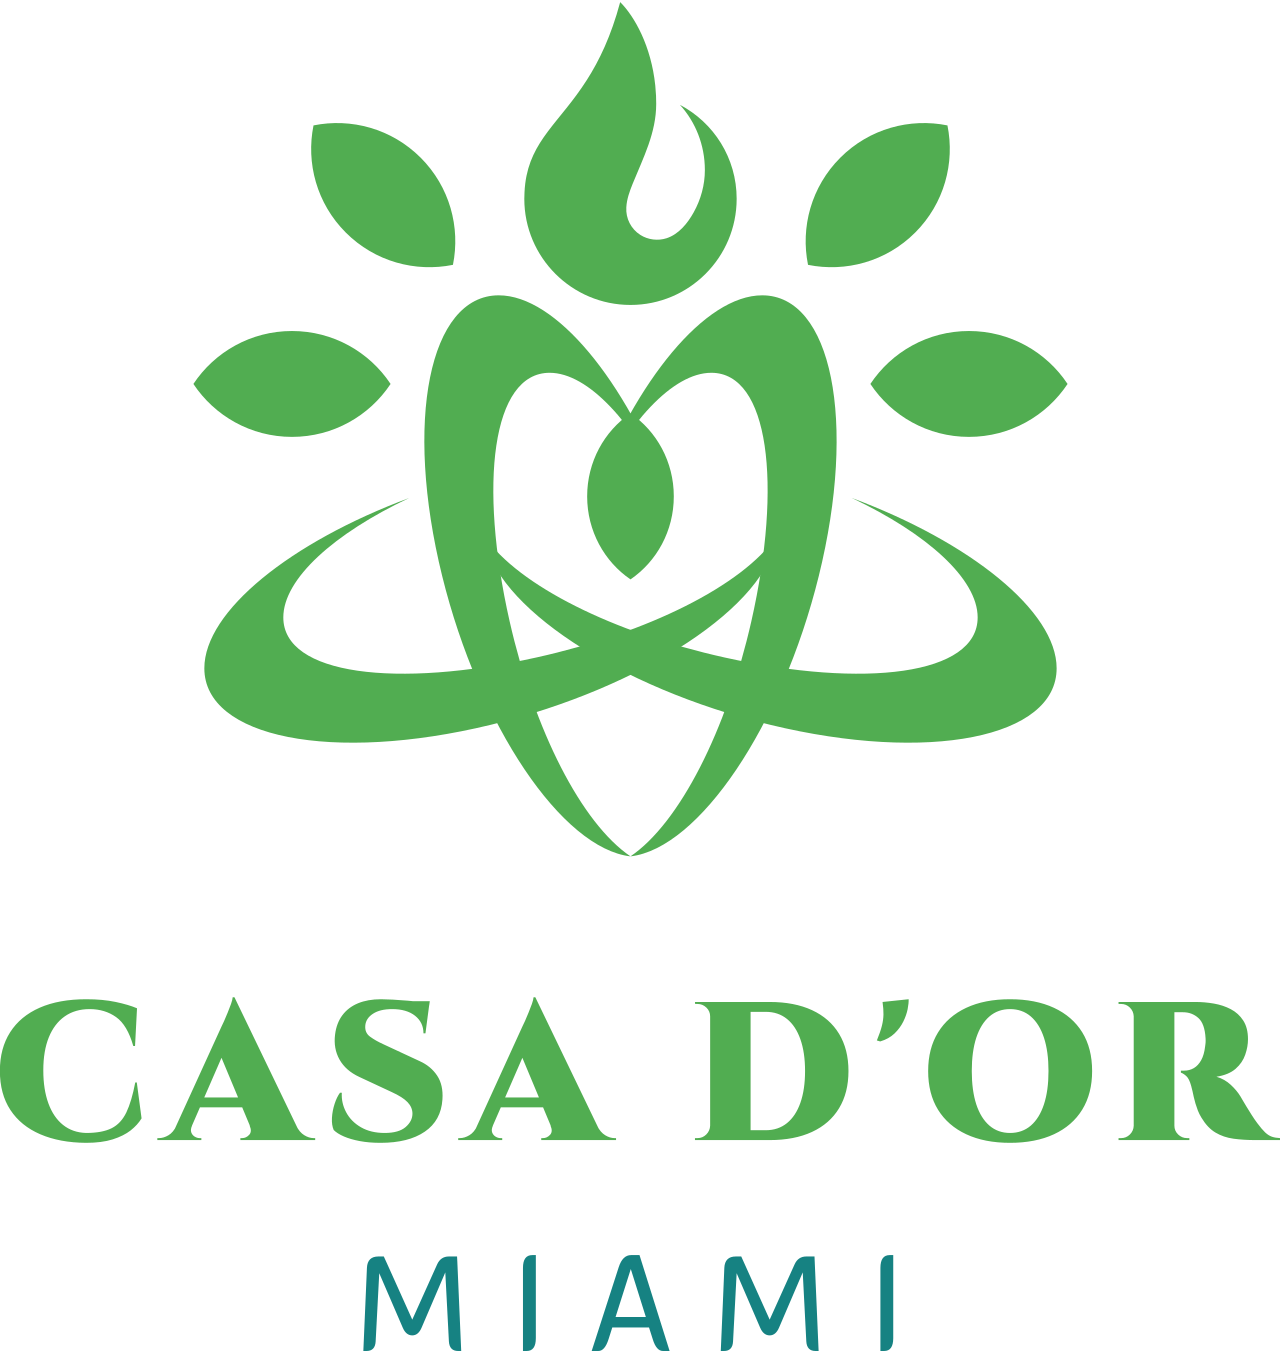 CASA D'OR's logo